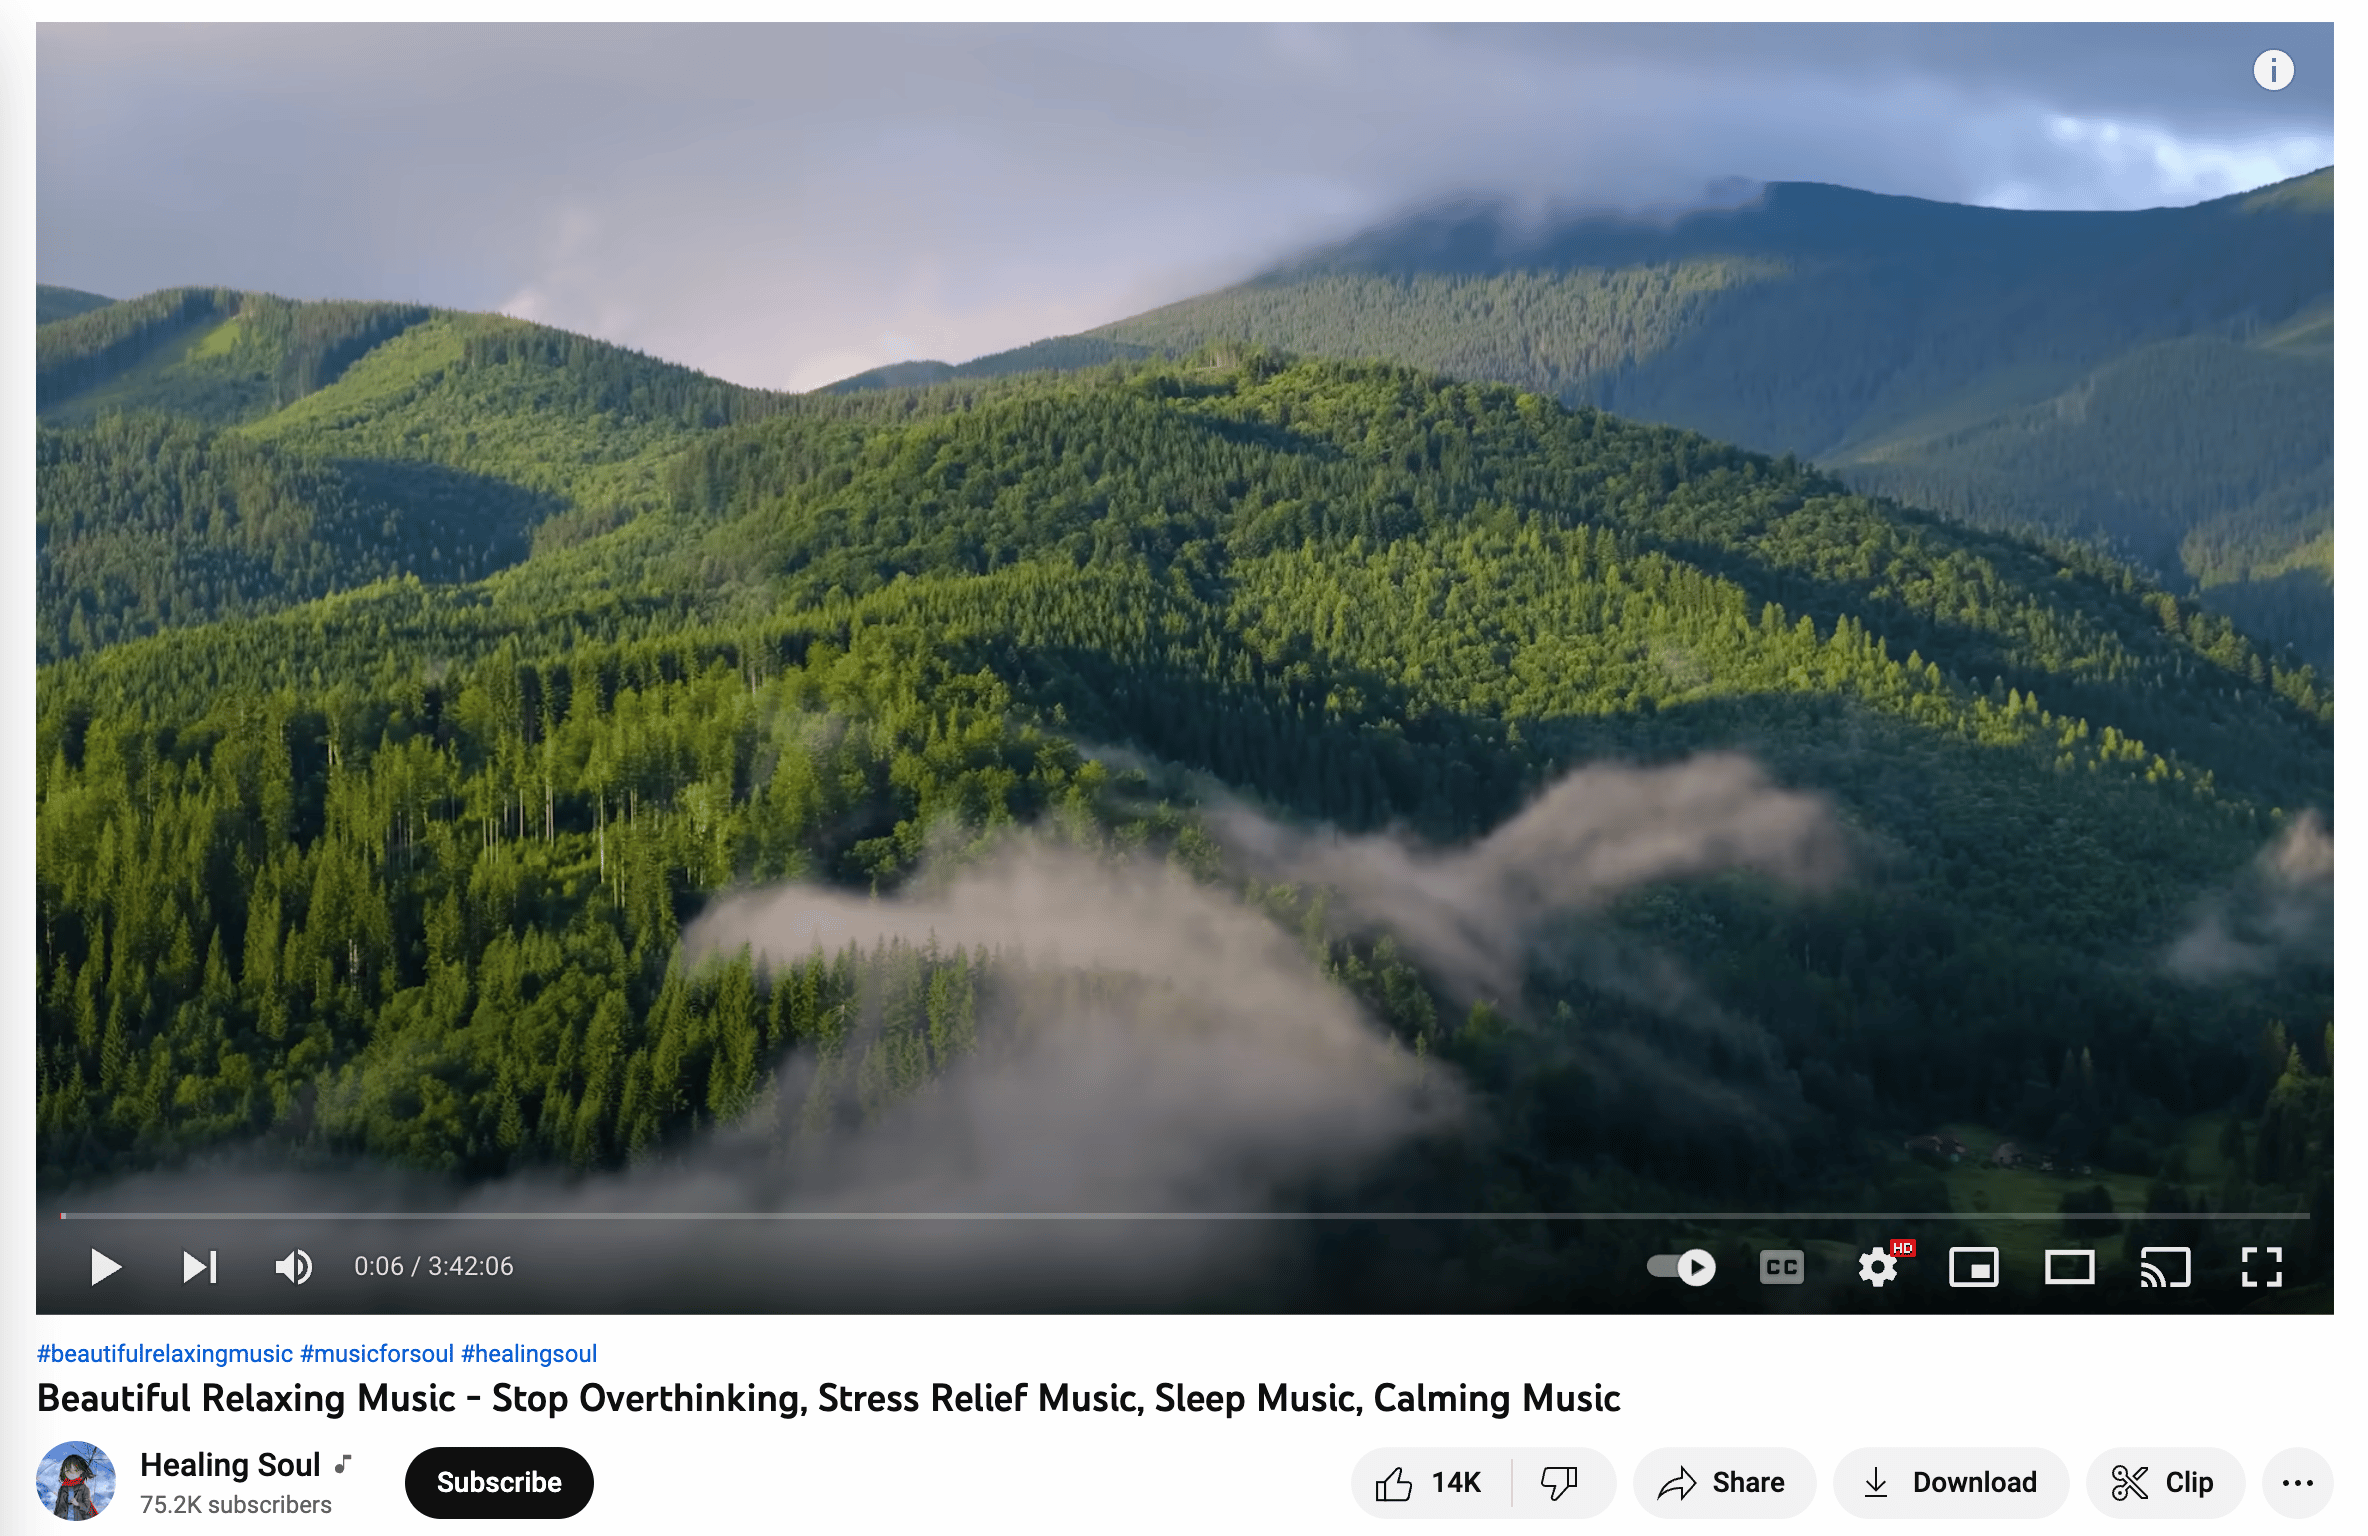 Heilendes Seelen-Meditationsvideo, das einen bewölkten grünen Berggipfel zeigt